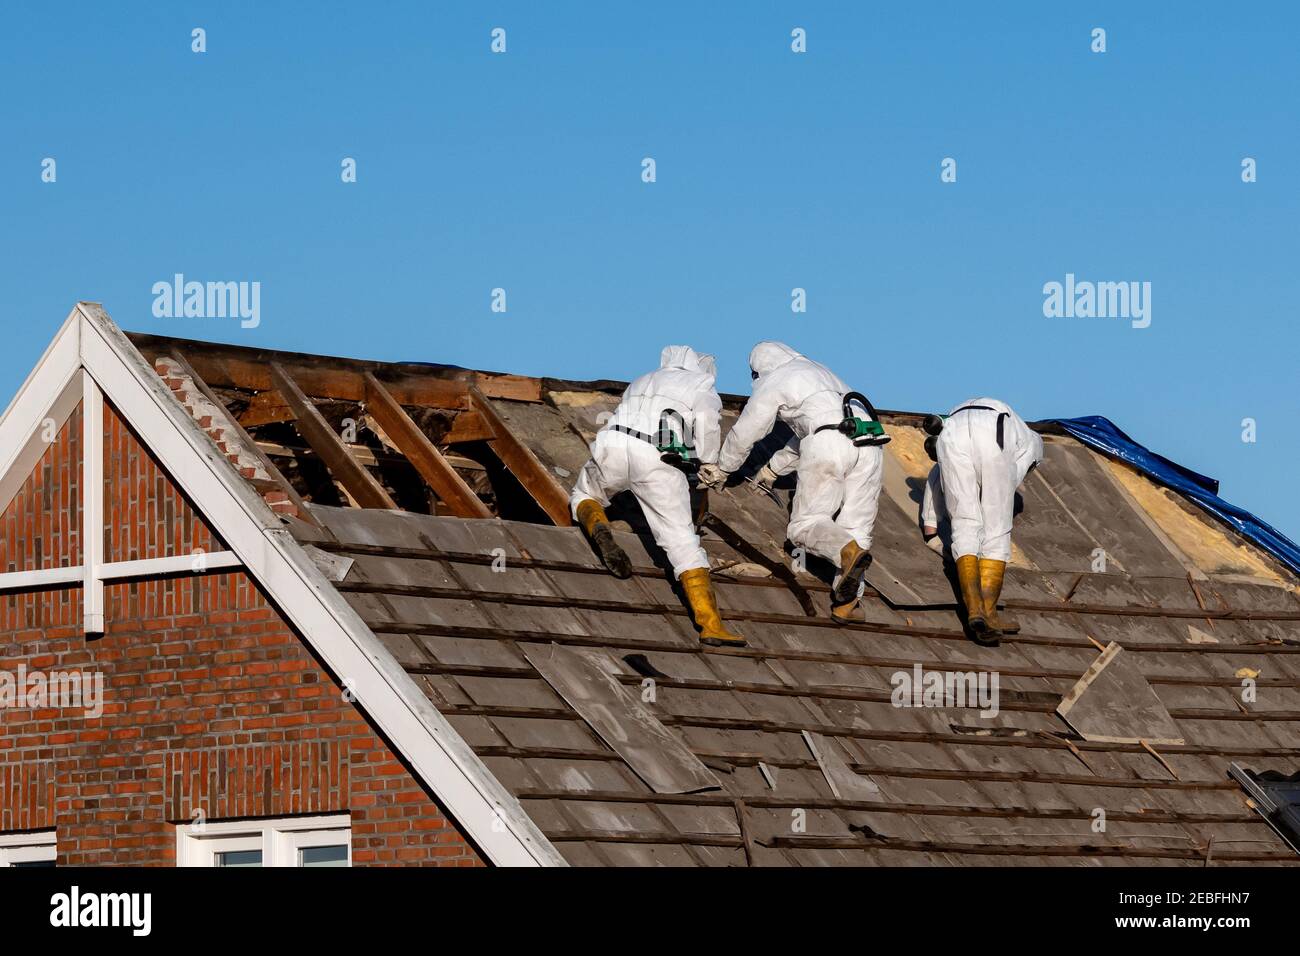 american asbestos roof tiles